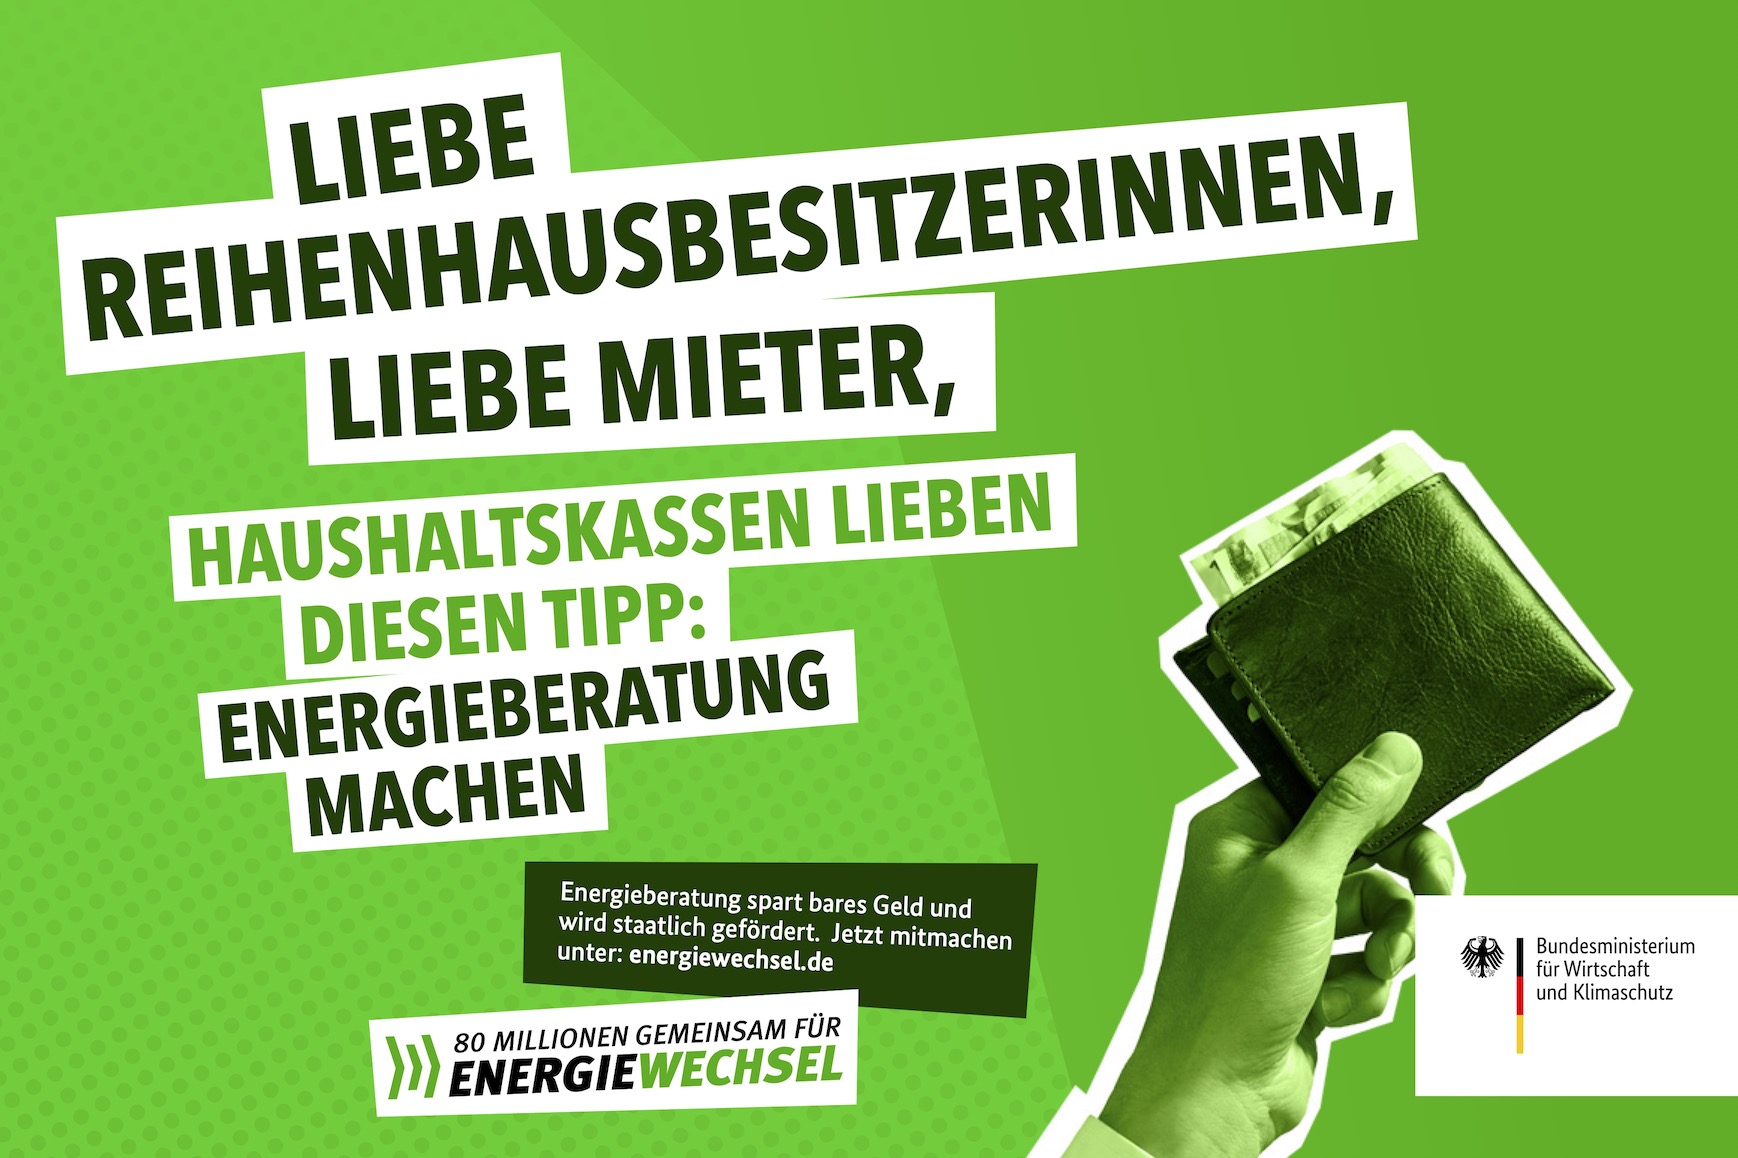 Kampagnenmotiv „Liebe Reihenhausbesitzerinnen, liebe Mieter” | 80 Millionen gemeinsam für Energiewechsel